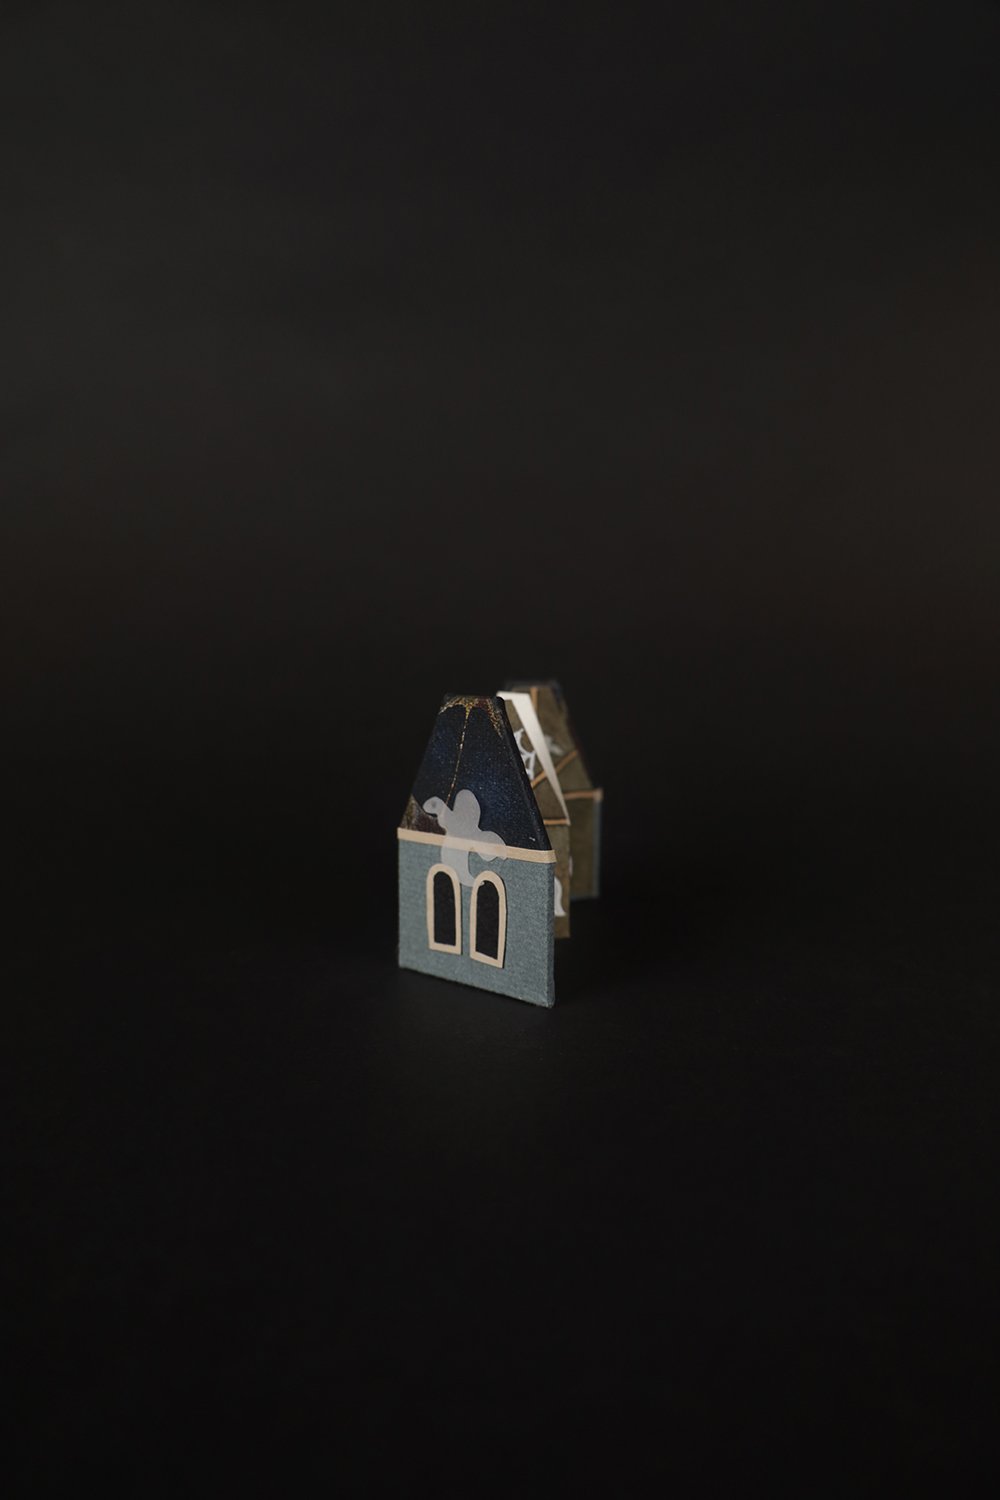 hauntedhouse-belltower-ext-small.jpg